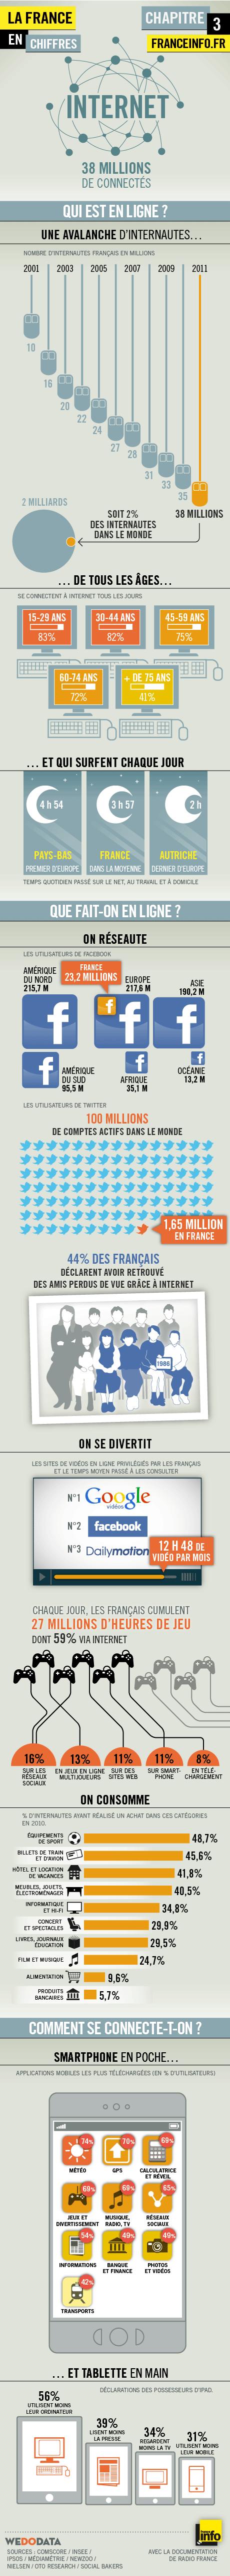 Comment les français utilisent-ils Internet ?